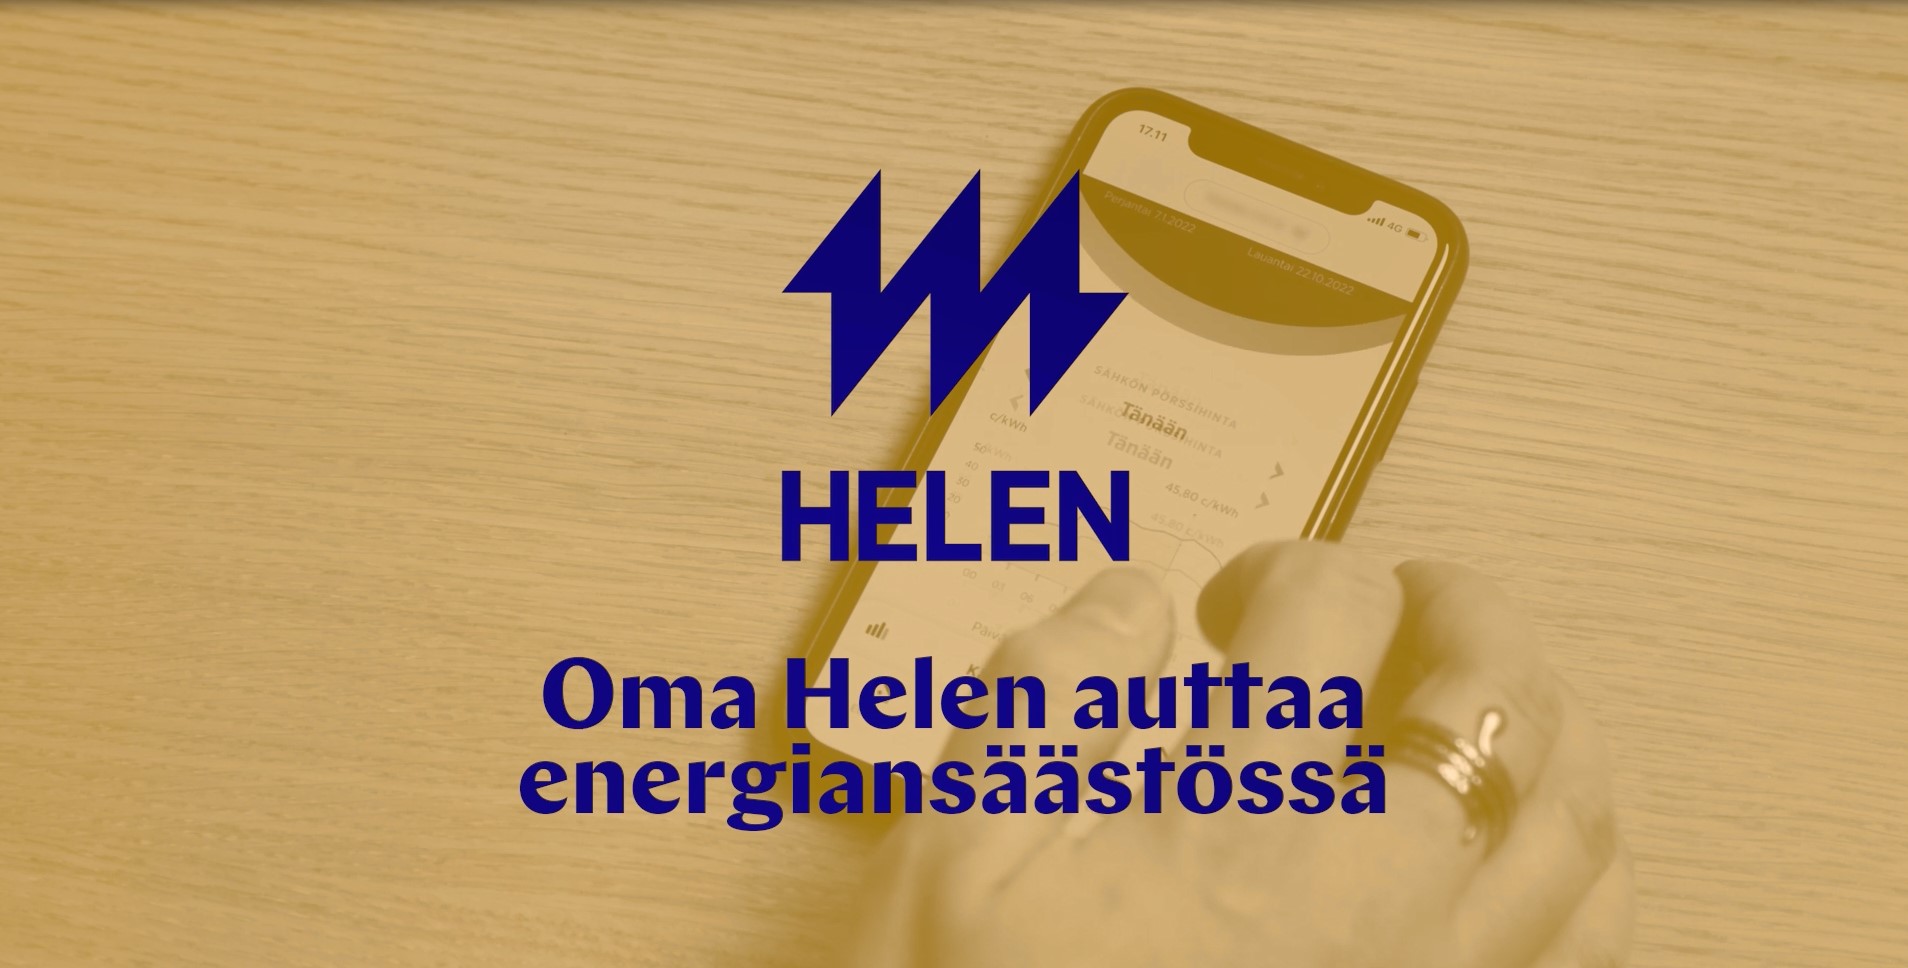 Oma Helen sovellus auttaa säästämään energiaa